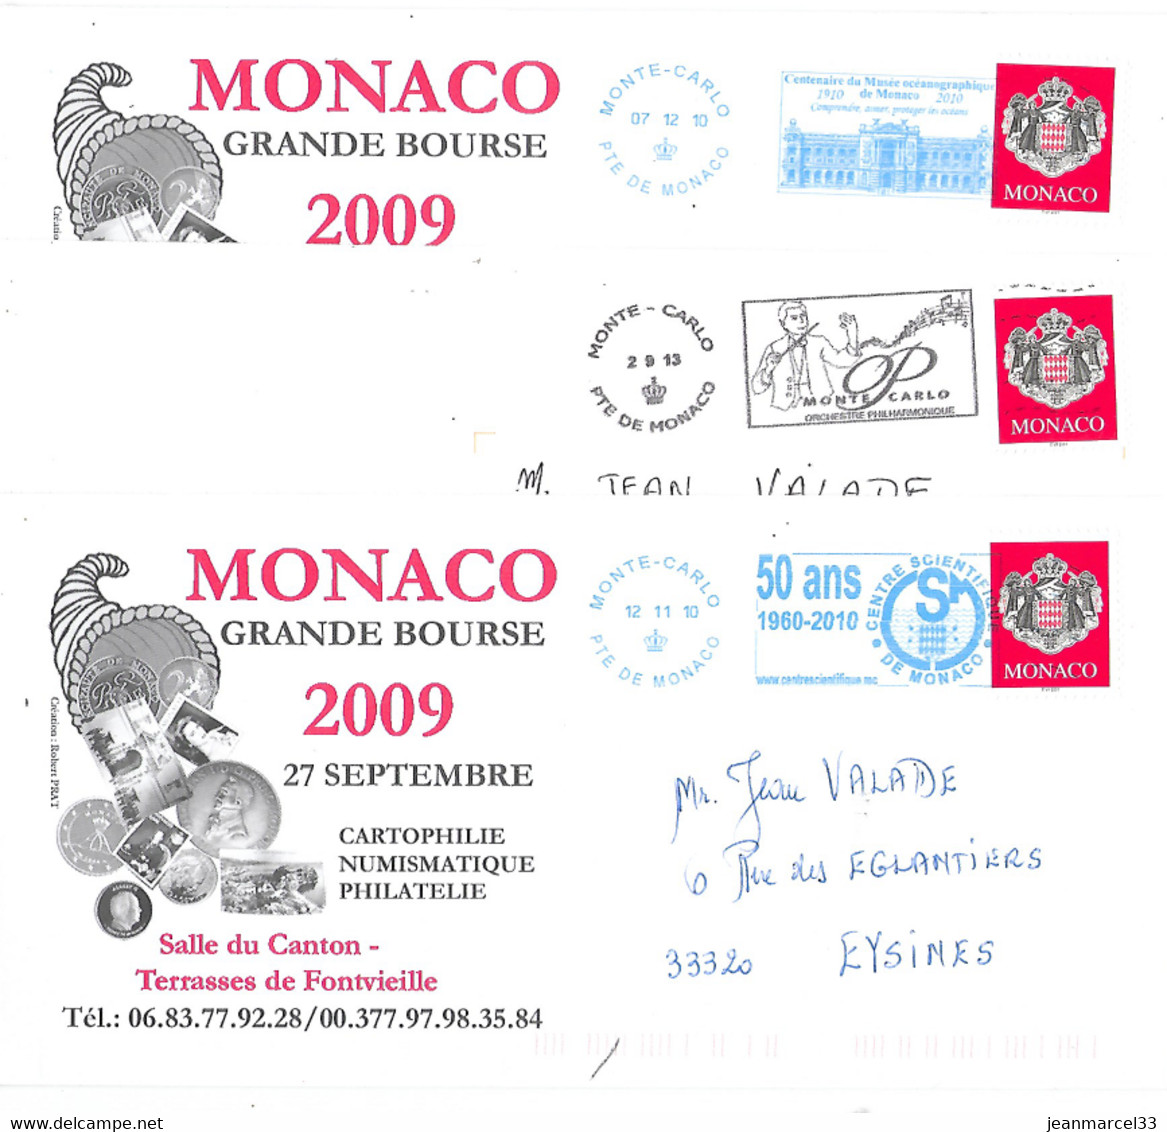 Monaco 3 Enveloppes Avec Flammes Du Type Néopost, Deux En Bleu Et Une En Noire - Maschinenstempel (EMA)